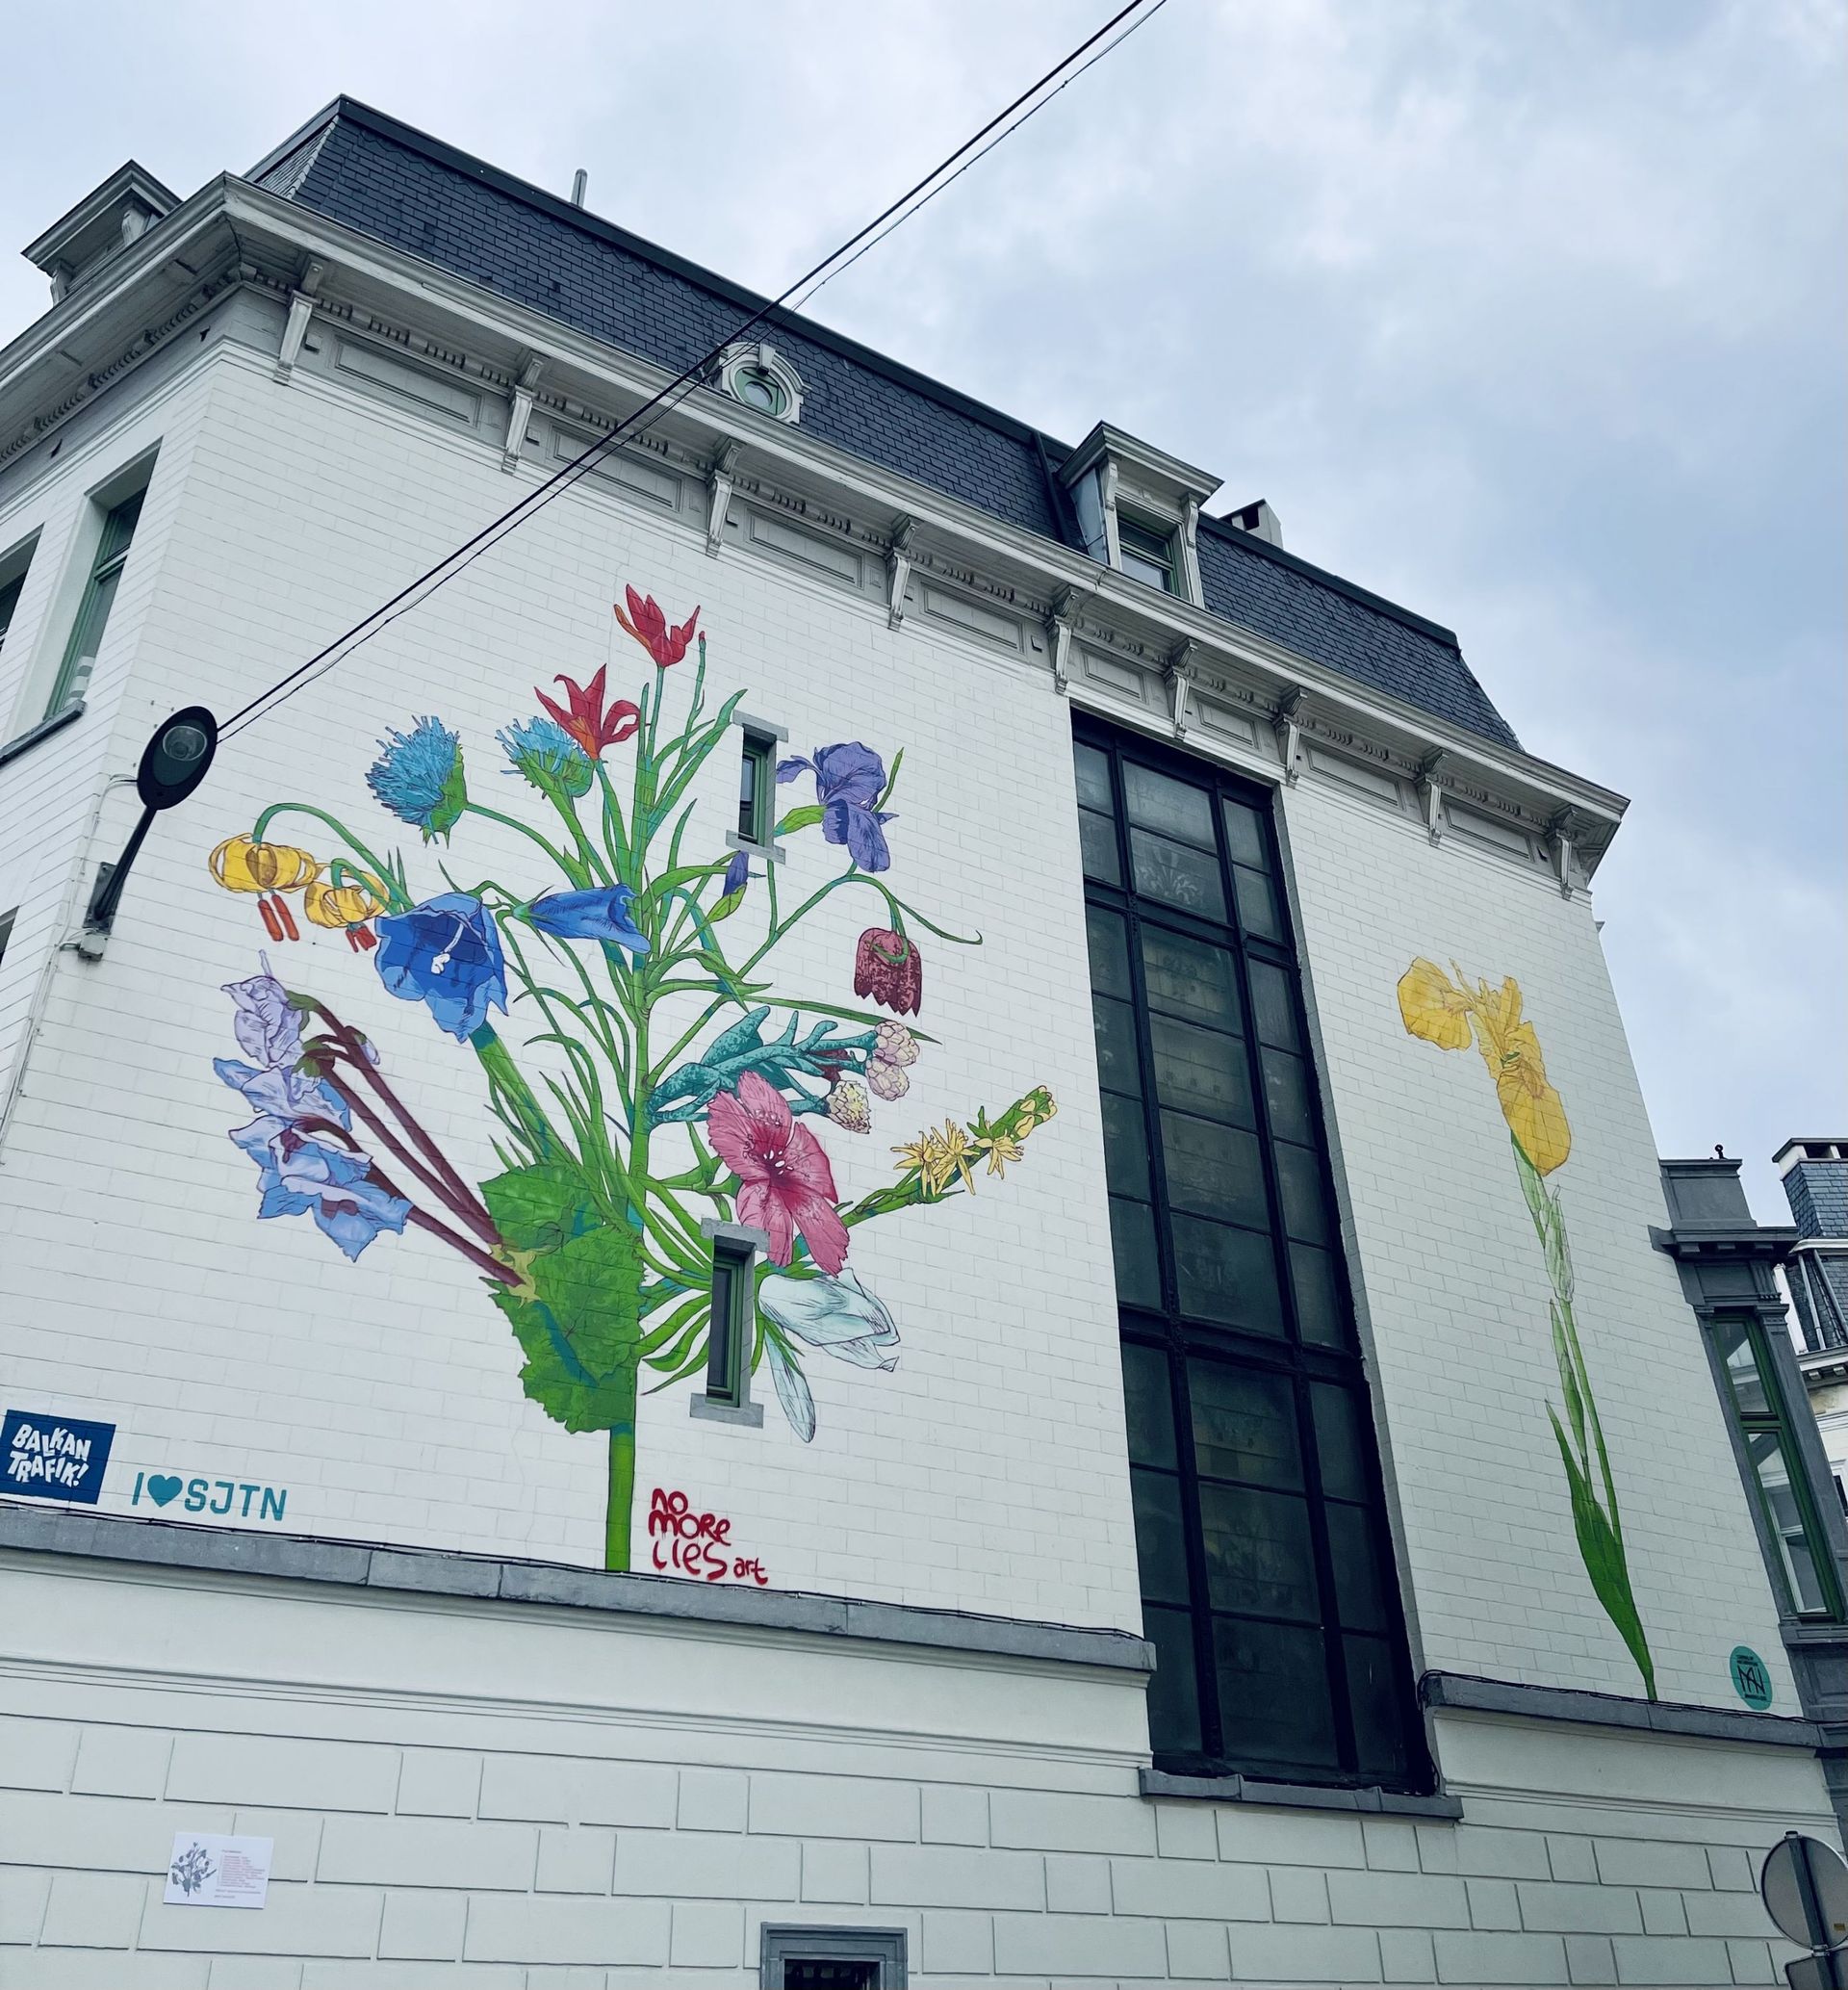 "Flora balcanica", réalisée par l’artiste stambouliote No More Lies, est visible rue Brialmont à Saint-Josse-ten-Noode.